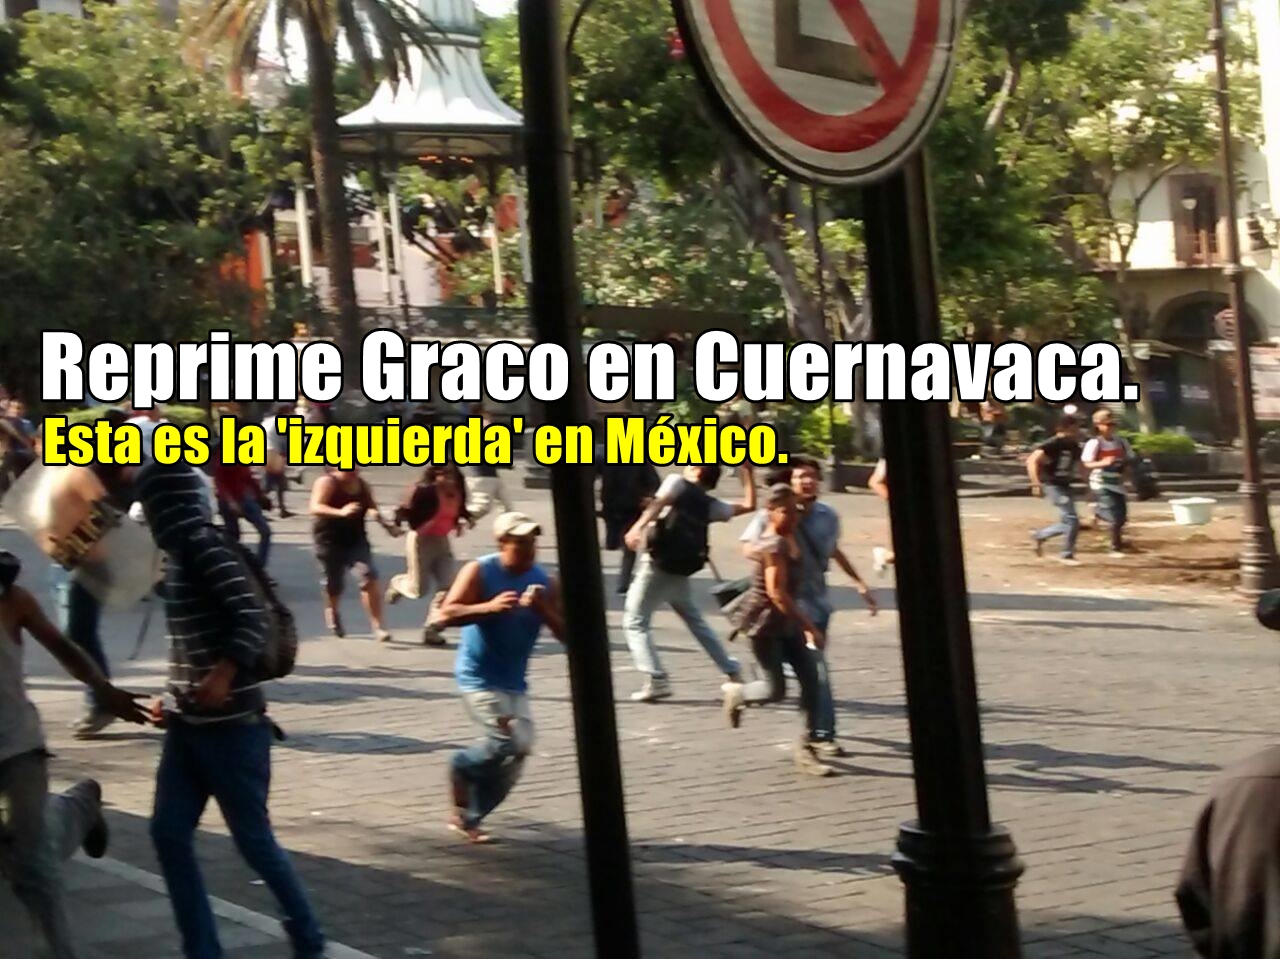 Veracruz, 2o lugar nacional en secuestros y fosas clandestinas. #FrutsisYGansitos.